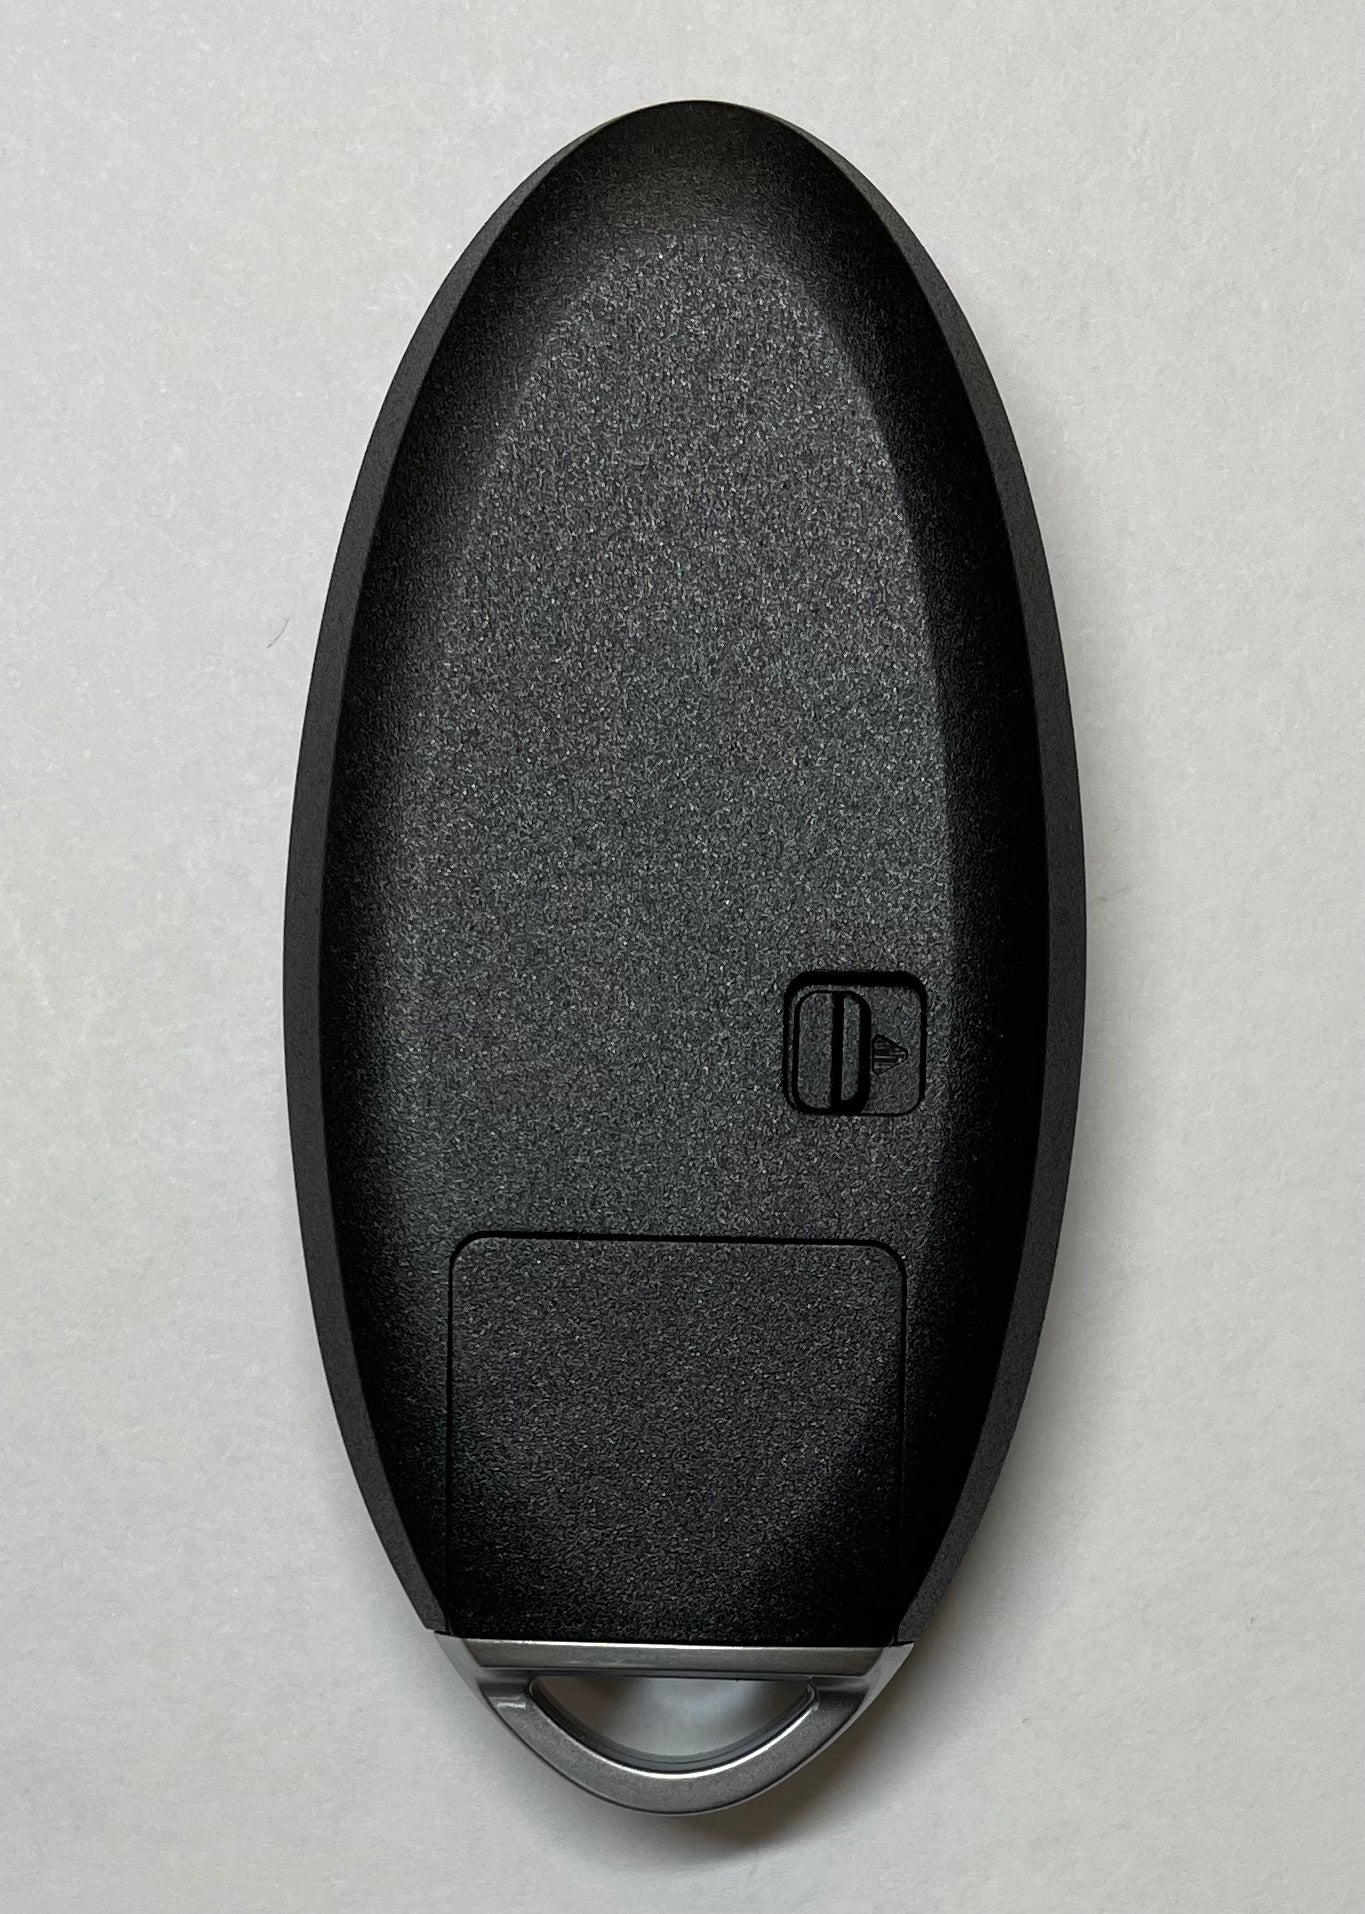 Infiniti & Nissan 2007 – 2015 - 4-Button Smart Key – FCC ID: KR55WK48903 , KR55WK49622 - SKU: ILCO-AX00010220